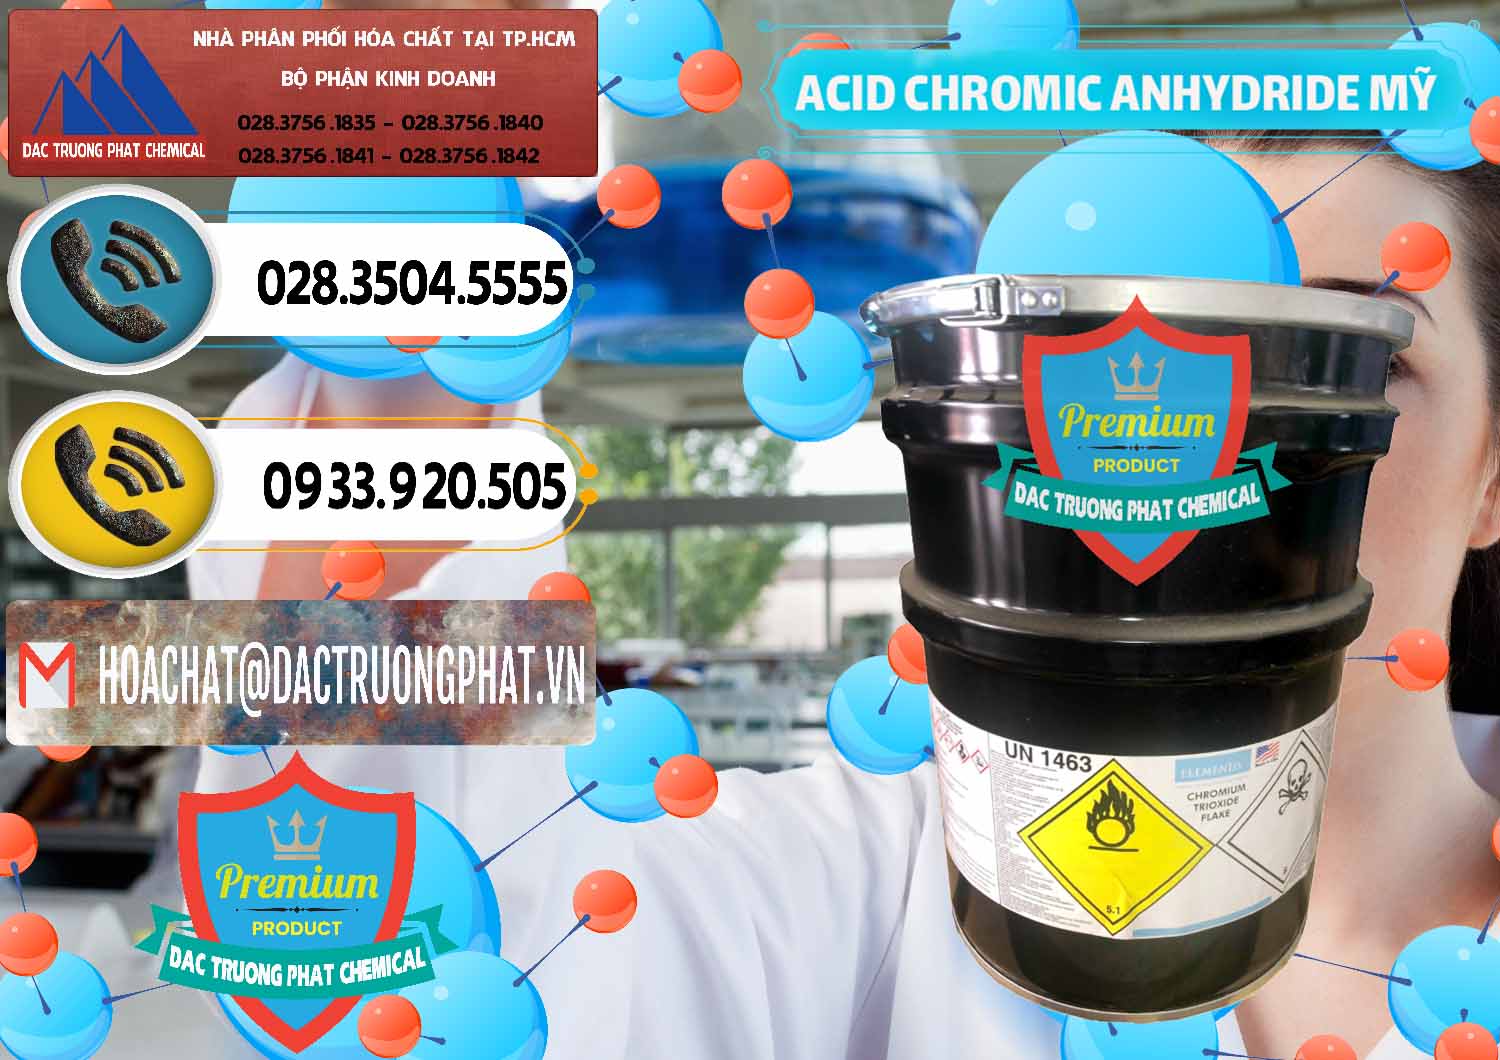 Công ty chuyên cung cấp và bán Acid Chromic Anhydride - Cromic CRO3 USA Mỹ - 0364 - Đơn vị cung cấp và phân phối hóa chất tại TP.HCM - hoachatdetnhuom.vn